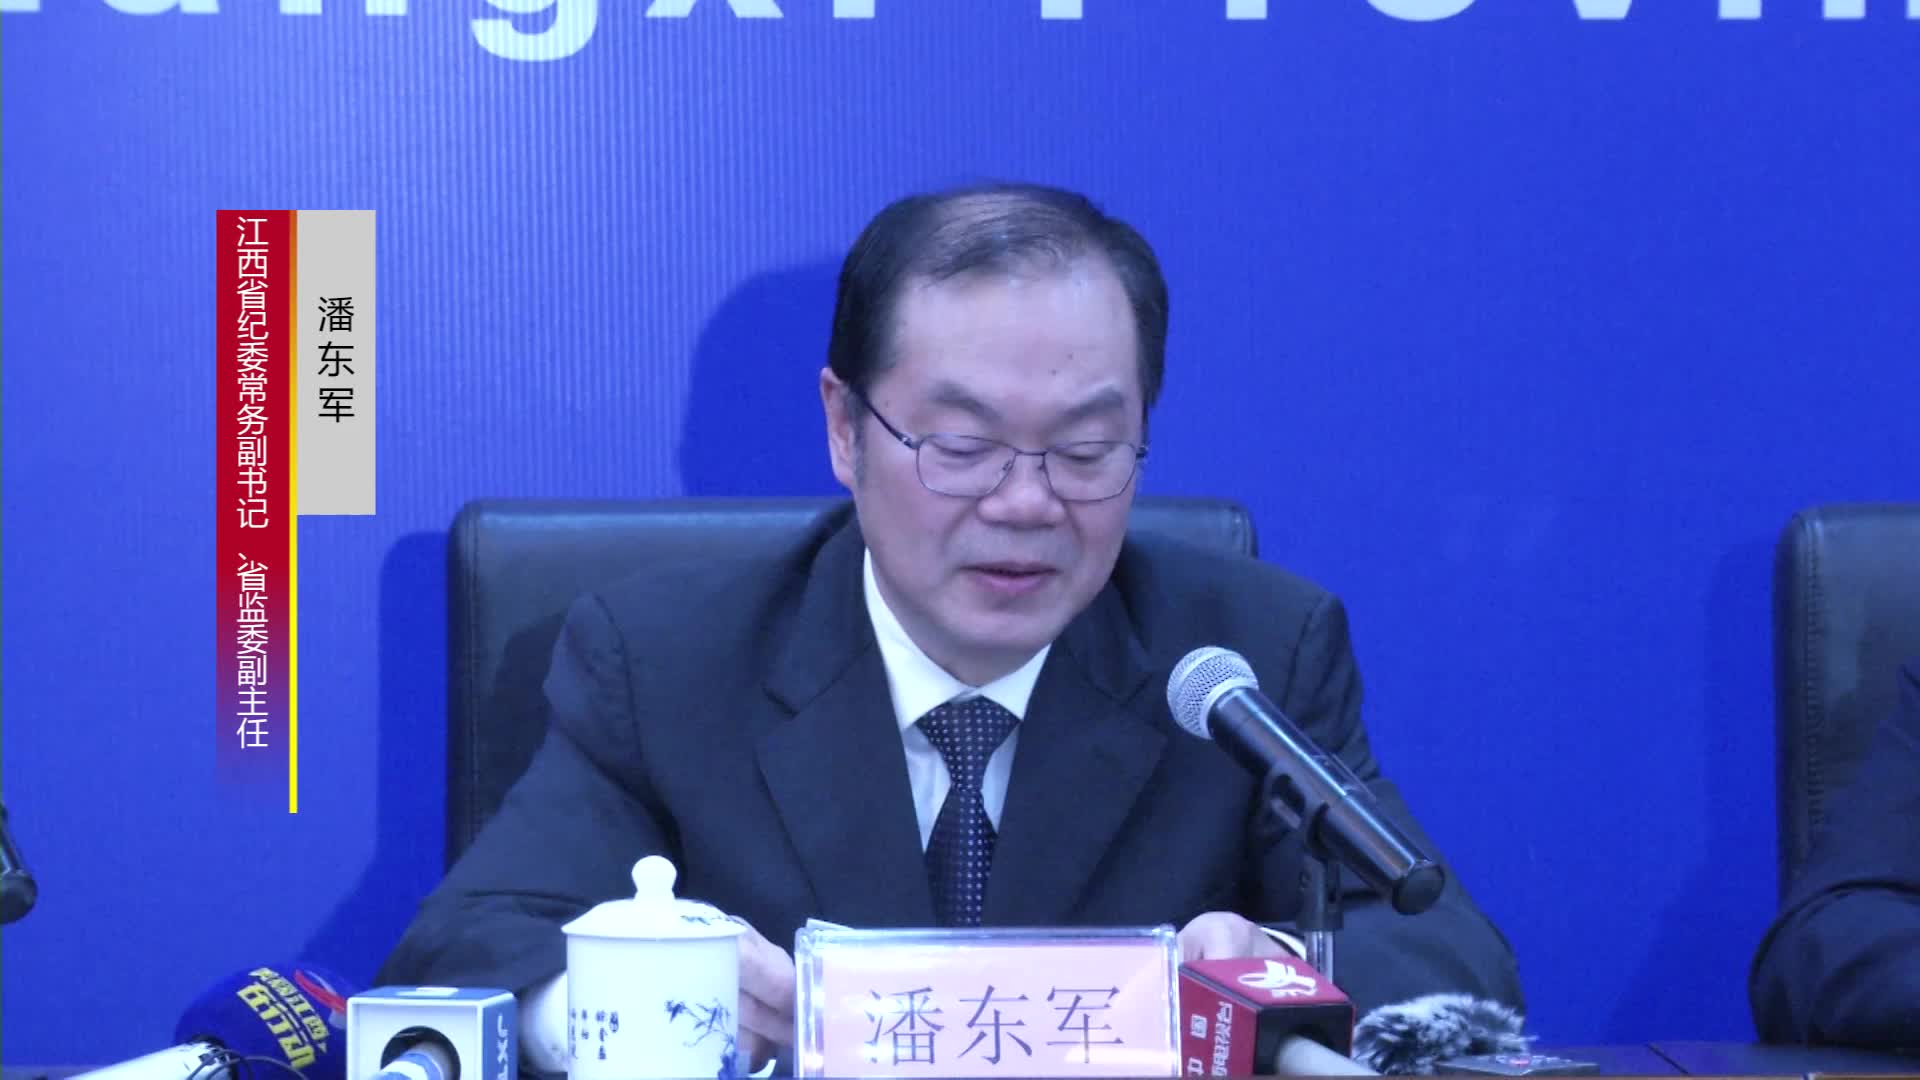 省纪委常务副书记潘东军发布整治侵害群众利益新闻